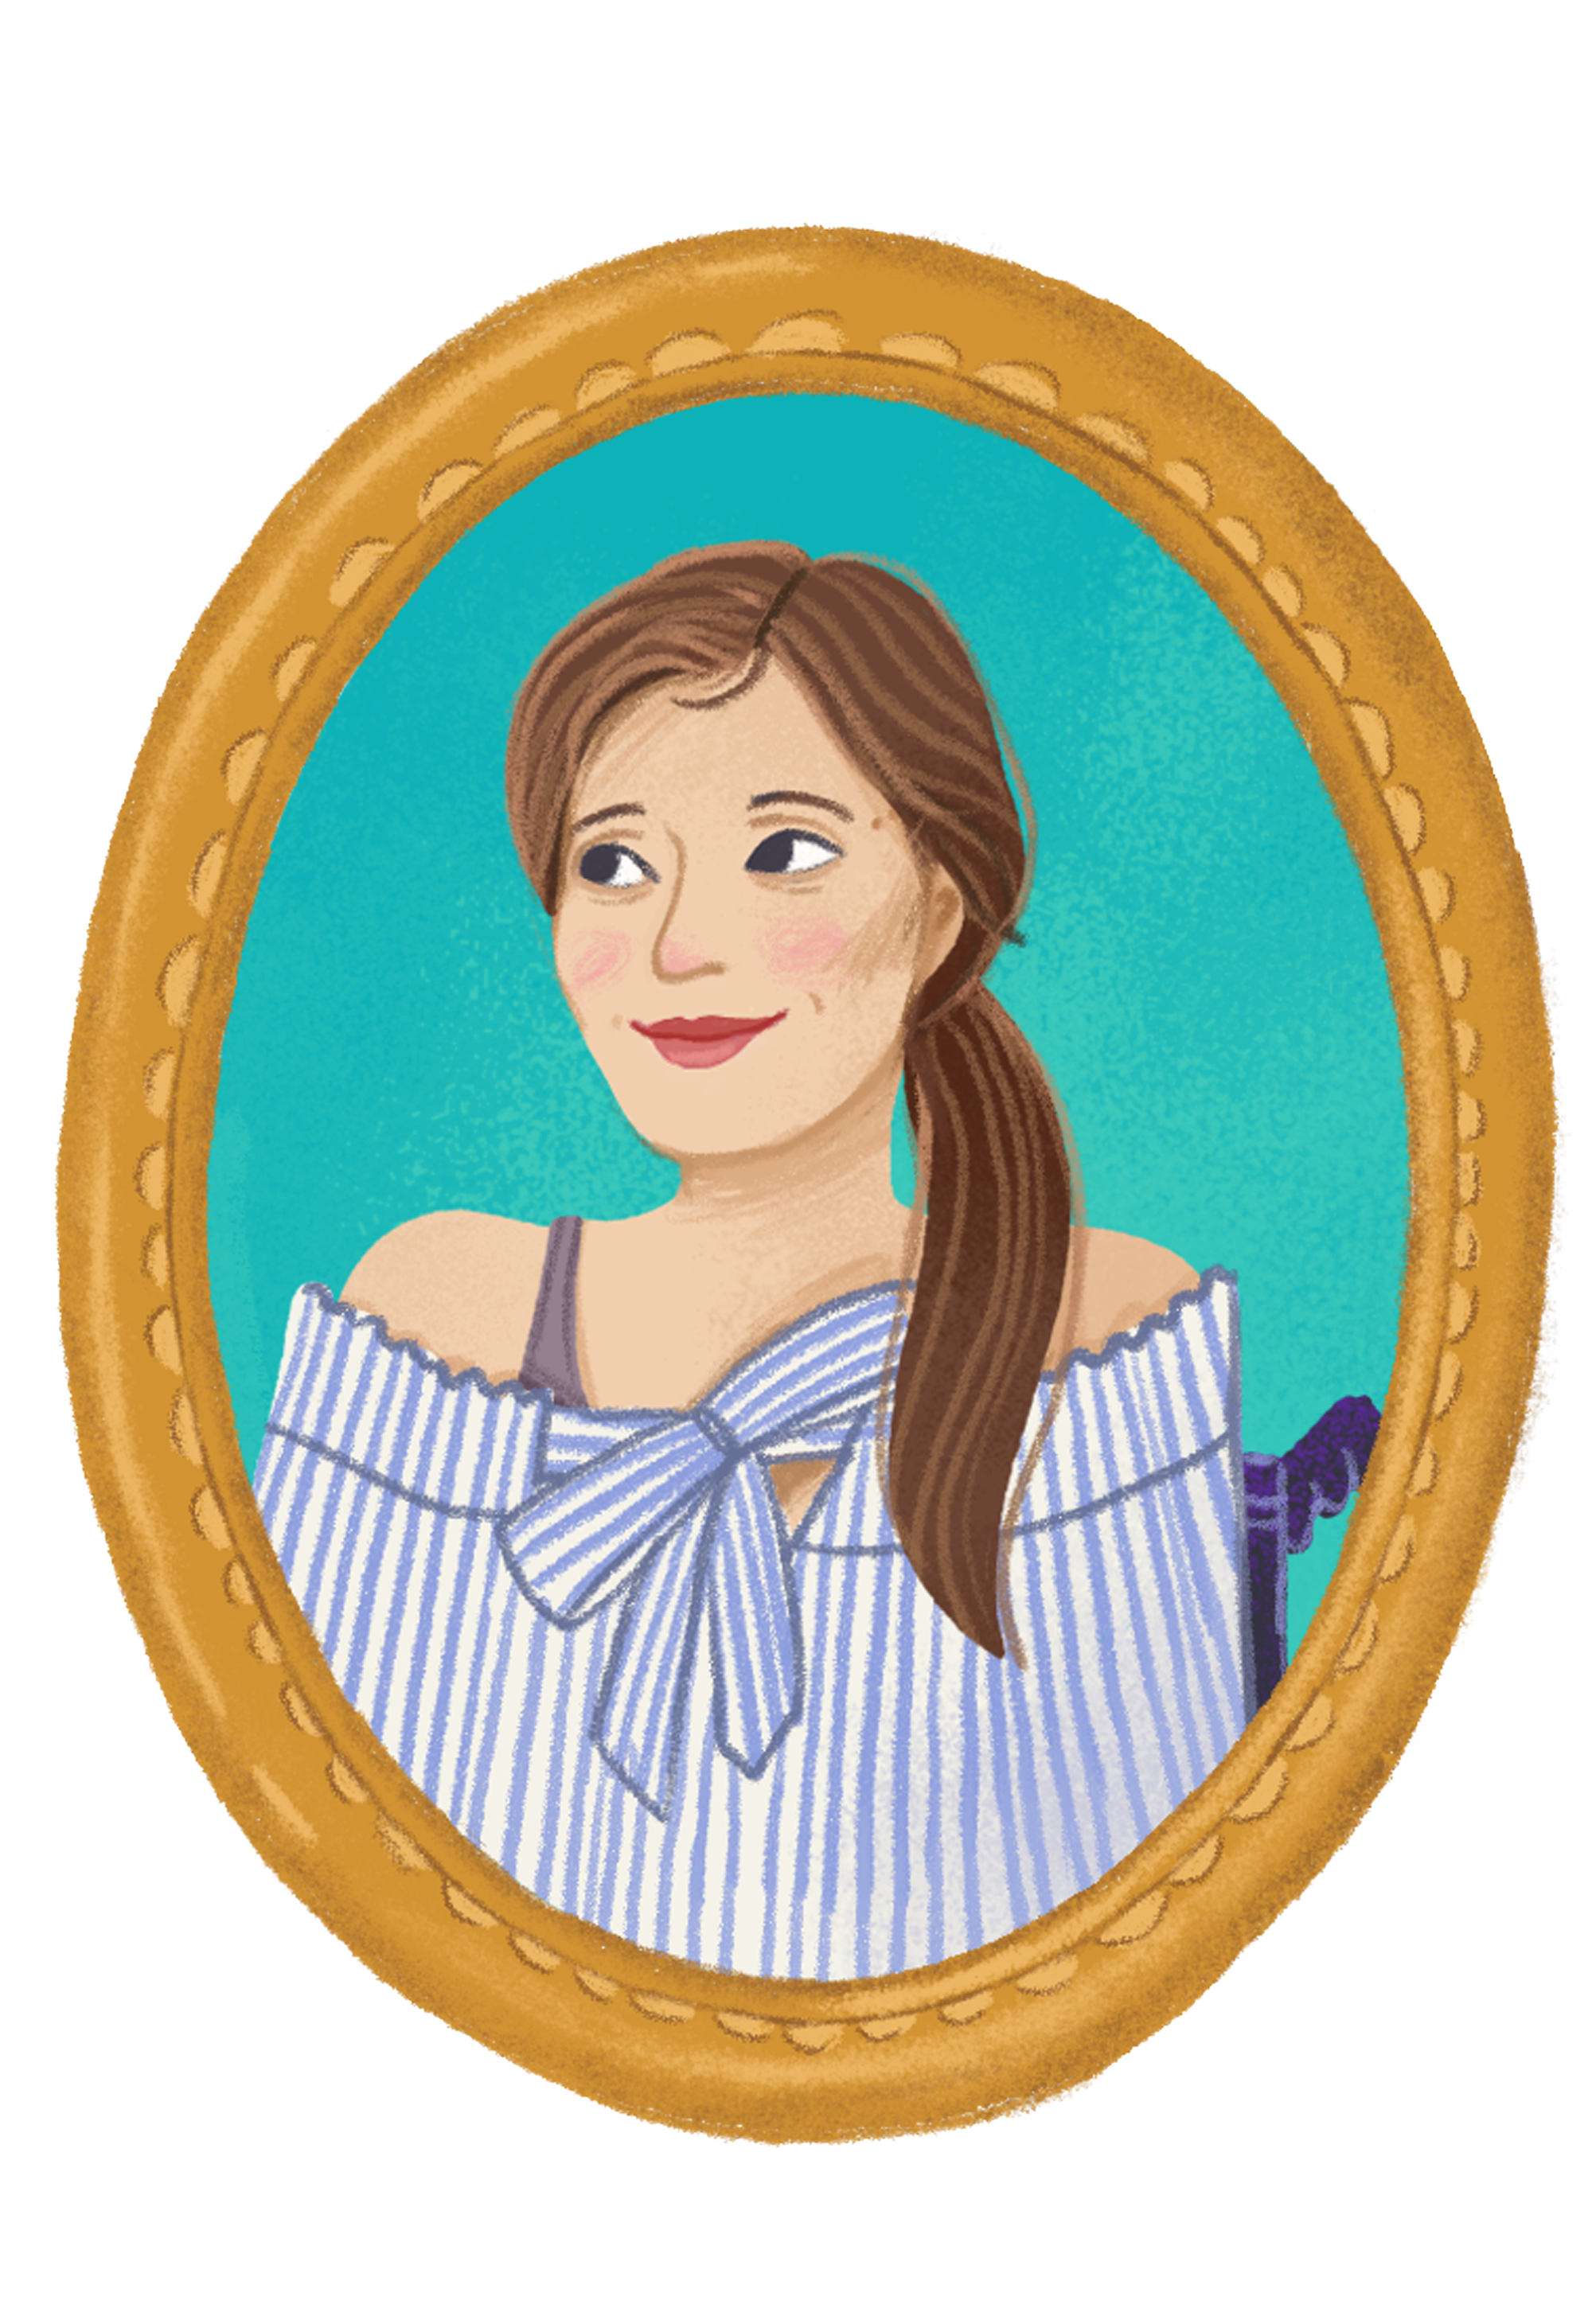 Das Bild zeigt ein Porträt von Adina Hermann mit langen braunen Haaren und einem off-shoulder Top mit blauen Streifen. Das Porträt ist in einem ovalen, goldenen Rahmen dargestellt, was ihm eine klassische und elegante Ausstrahlung verleiht.